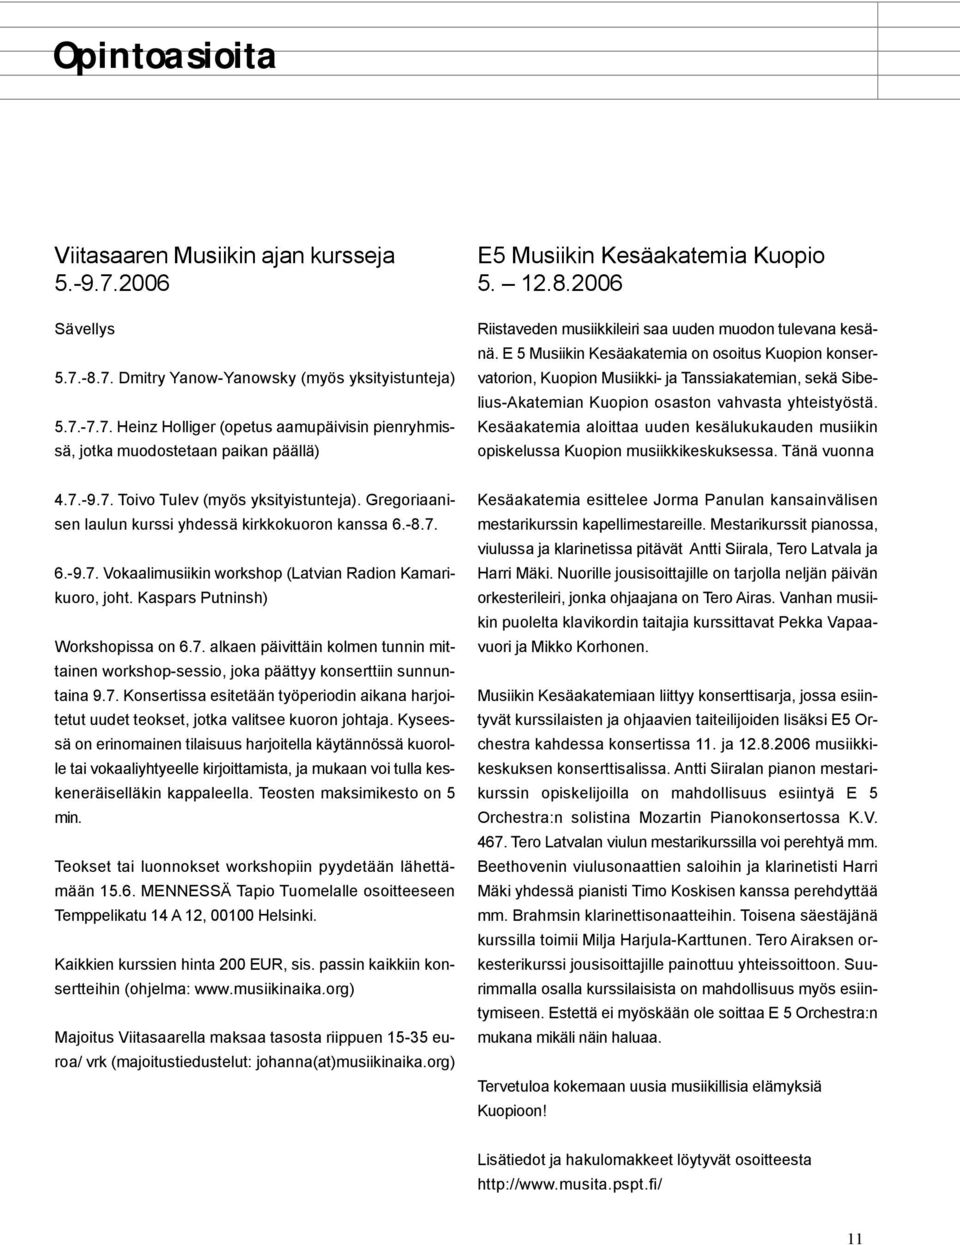 E 5 Musiikin Kesäakatemia on osoitus Kuopion konservatorion, Kuopion Musiikki- ja Tanssiakatemian, sekä Sibelius-Akatemian Kuopion osaston vahvasta yhteistyöstä.